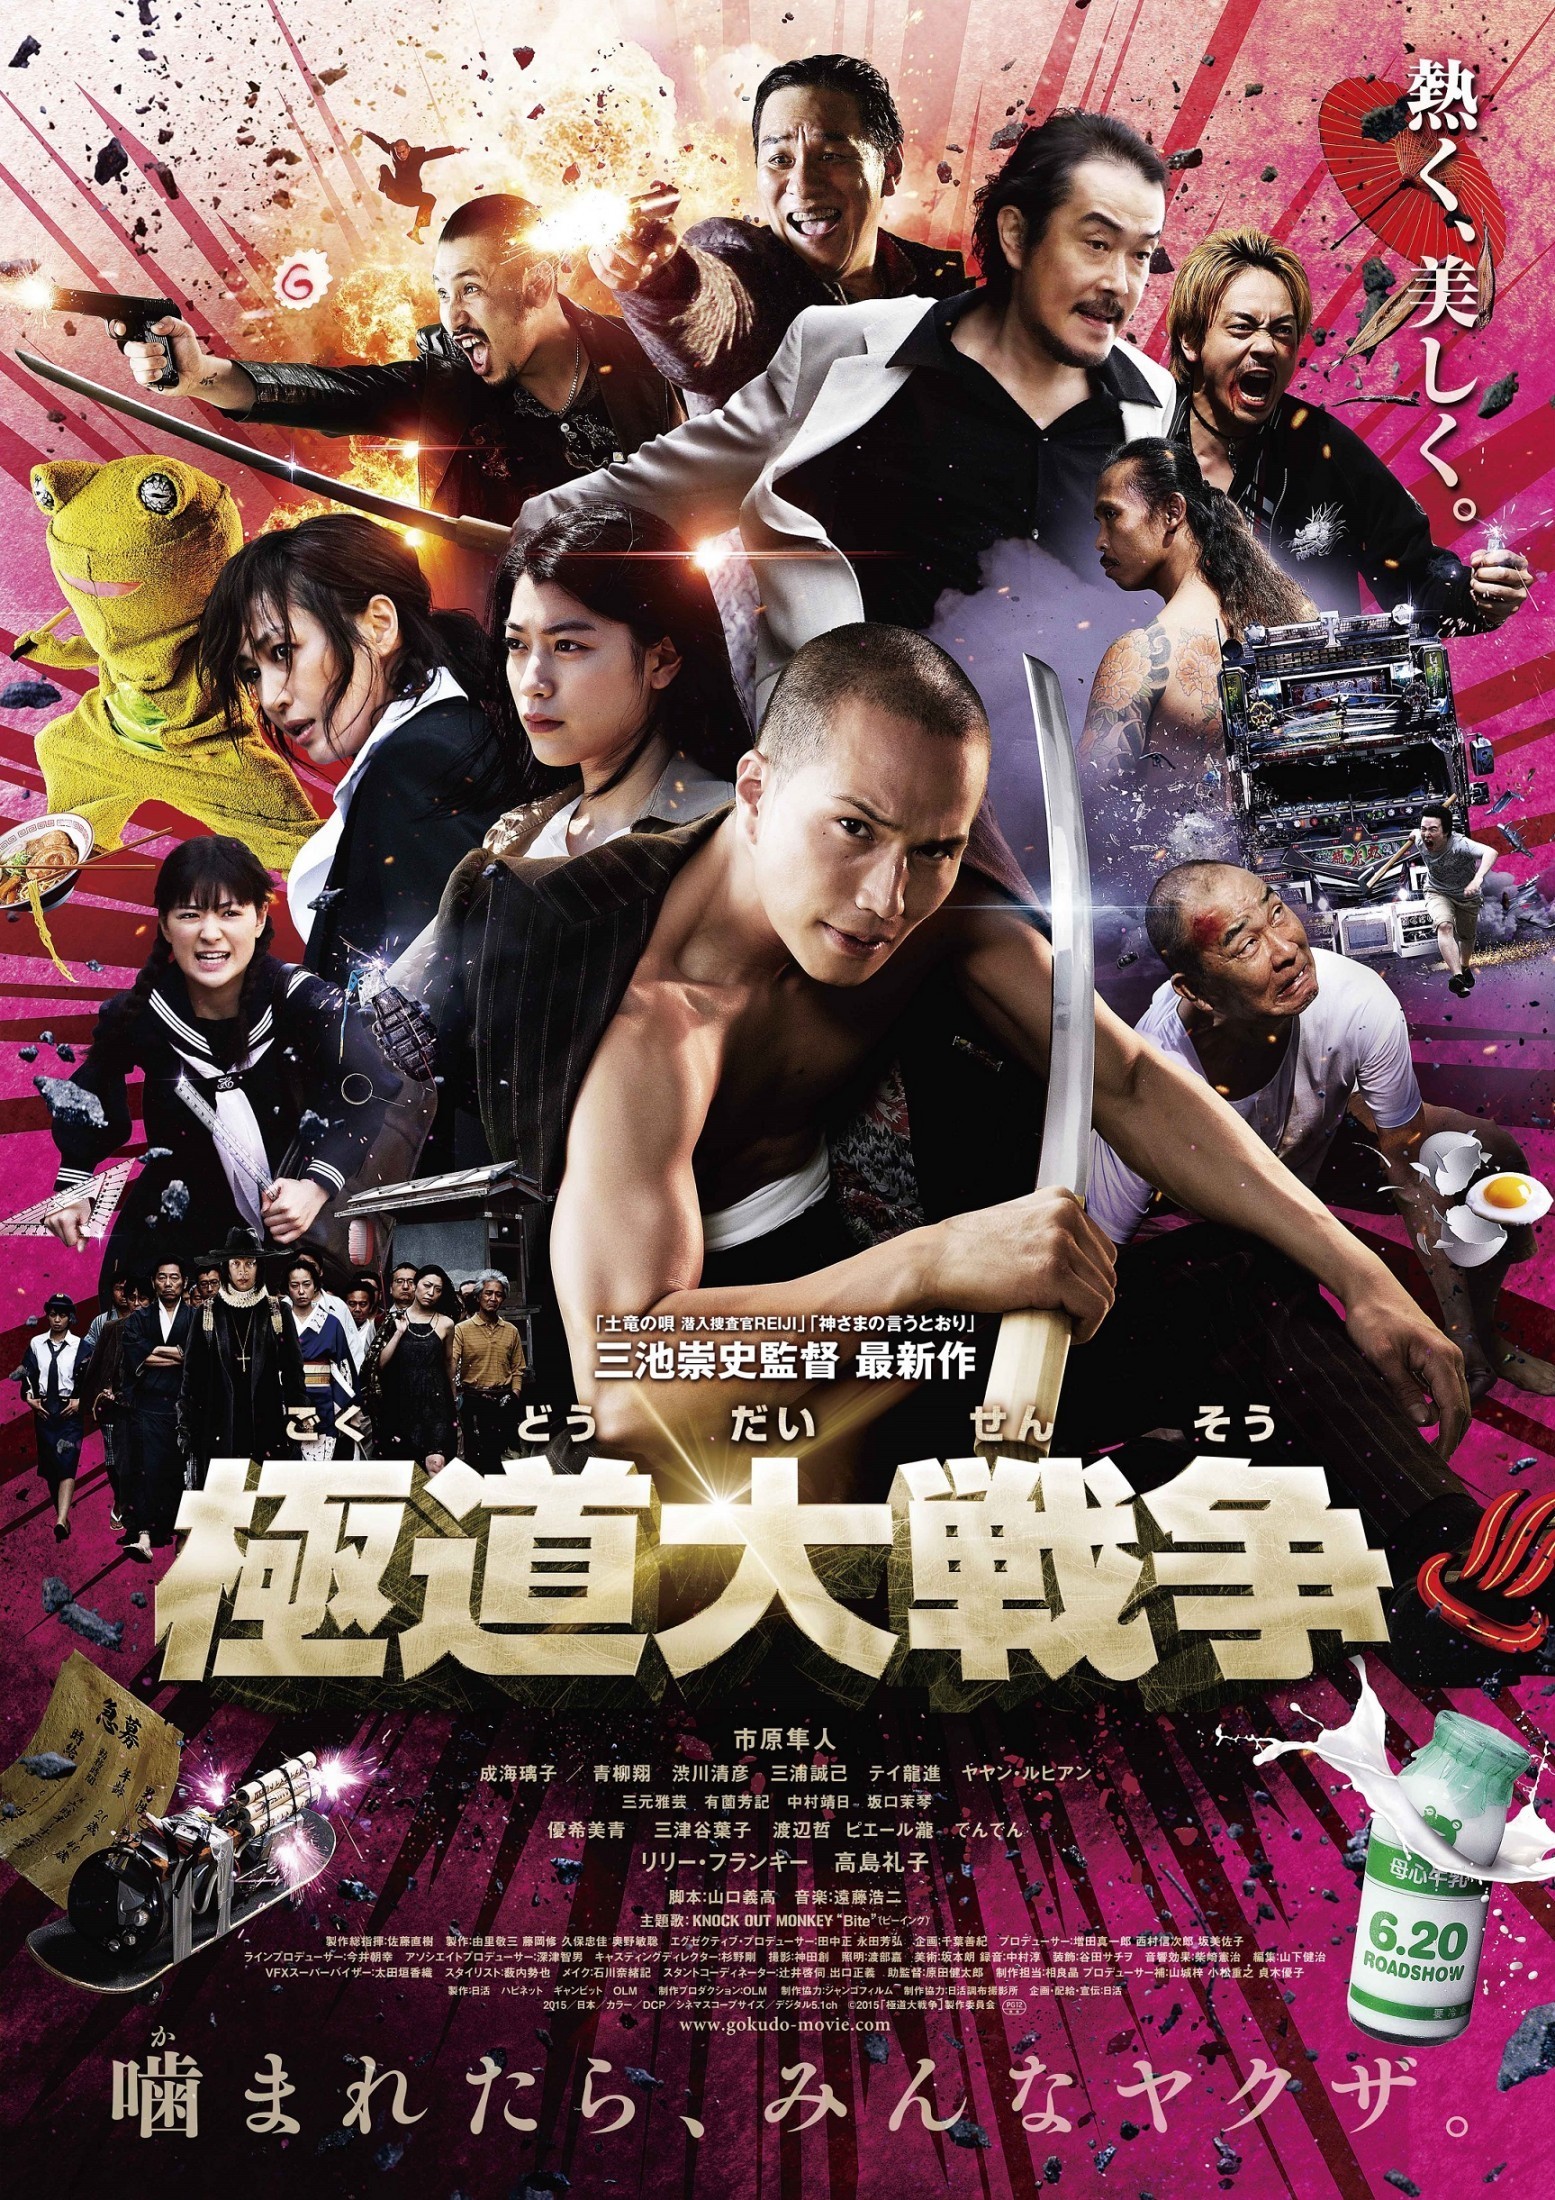 Mega Sized Movie Poster Image for Gokudou daisensou (#1 of 3)